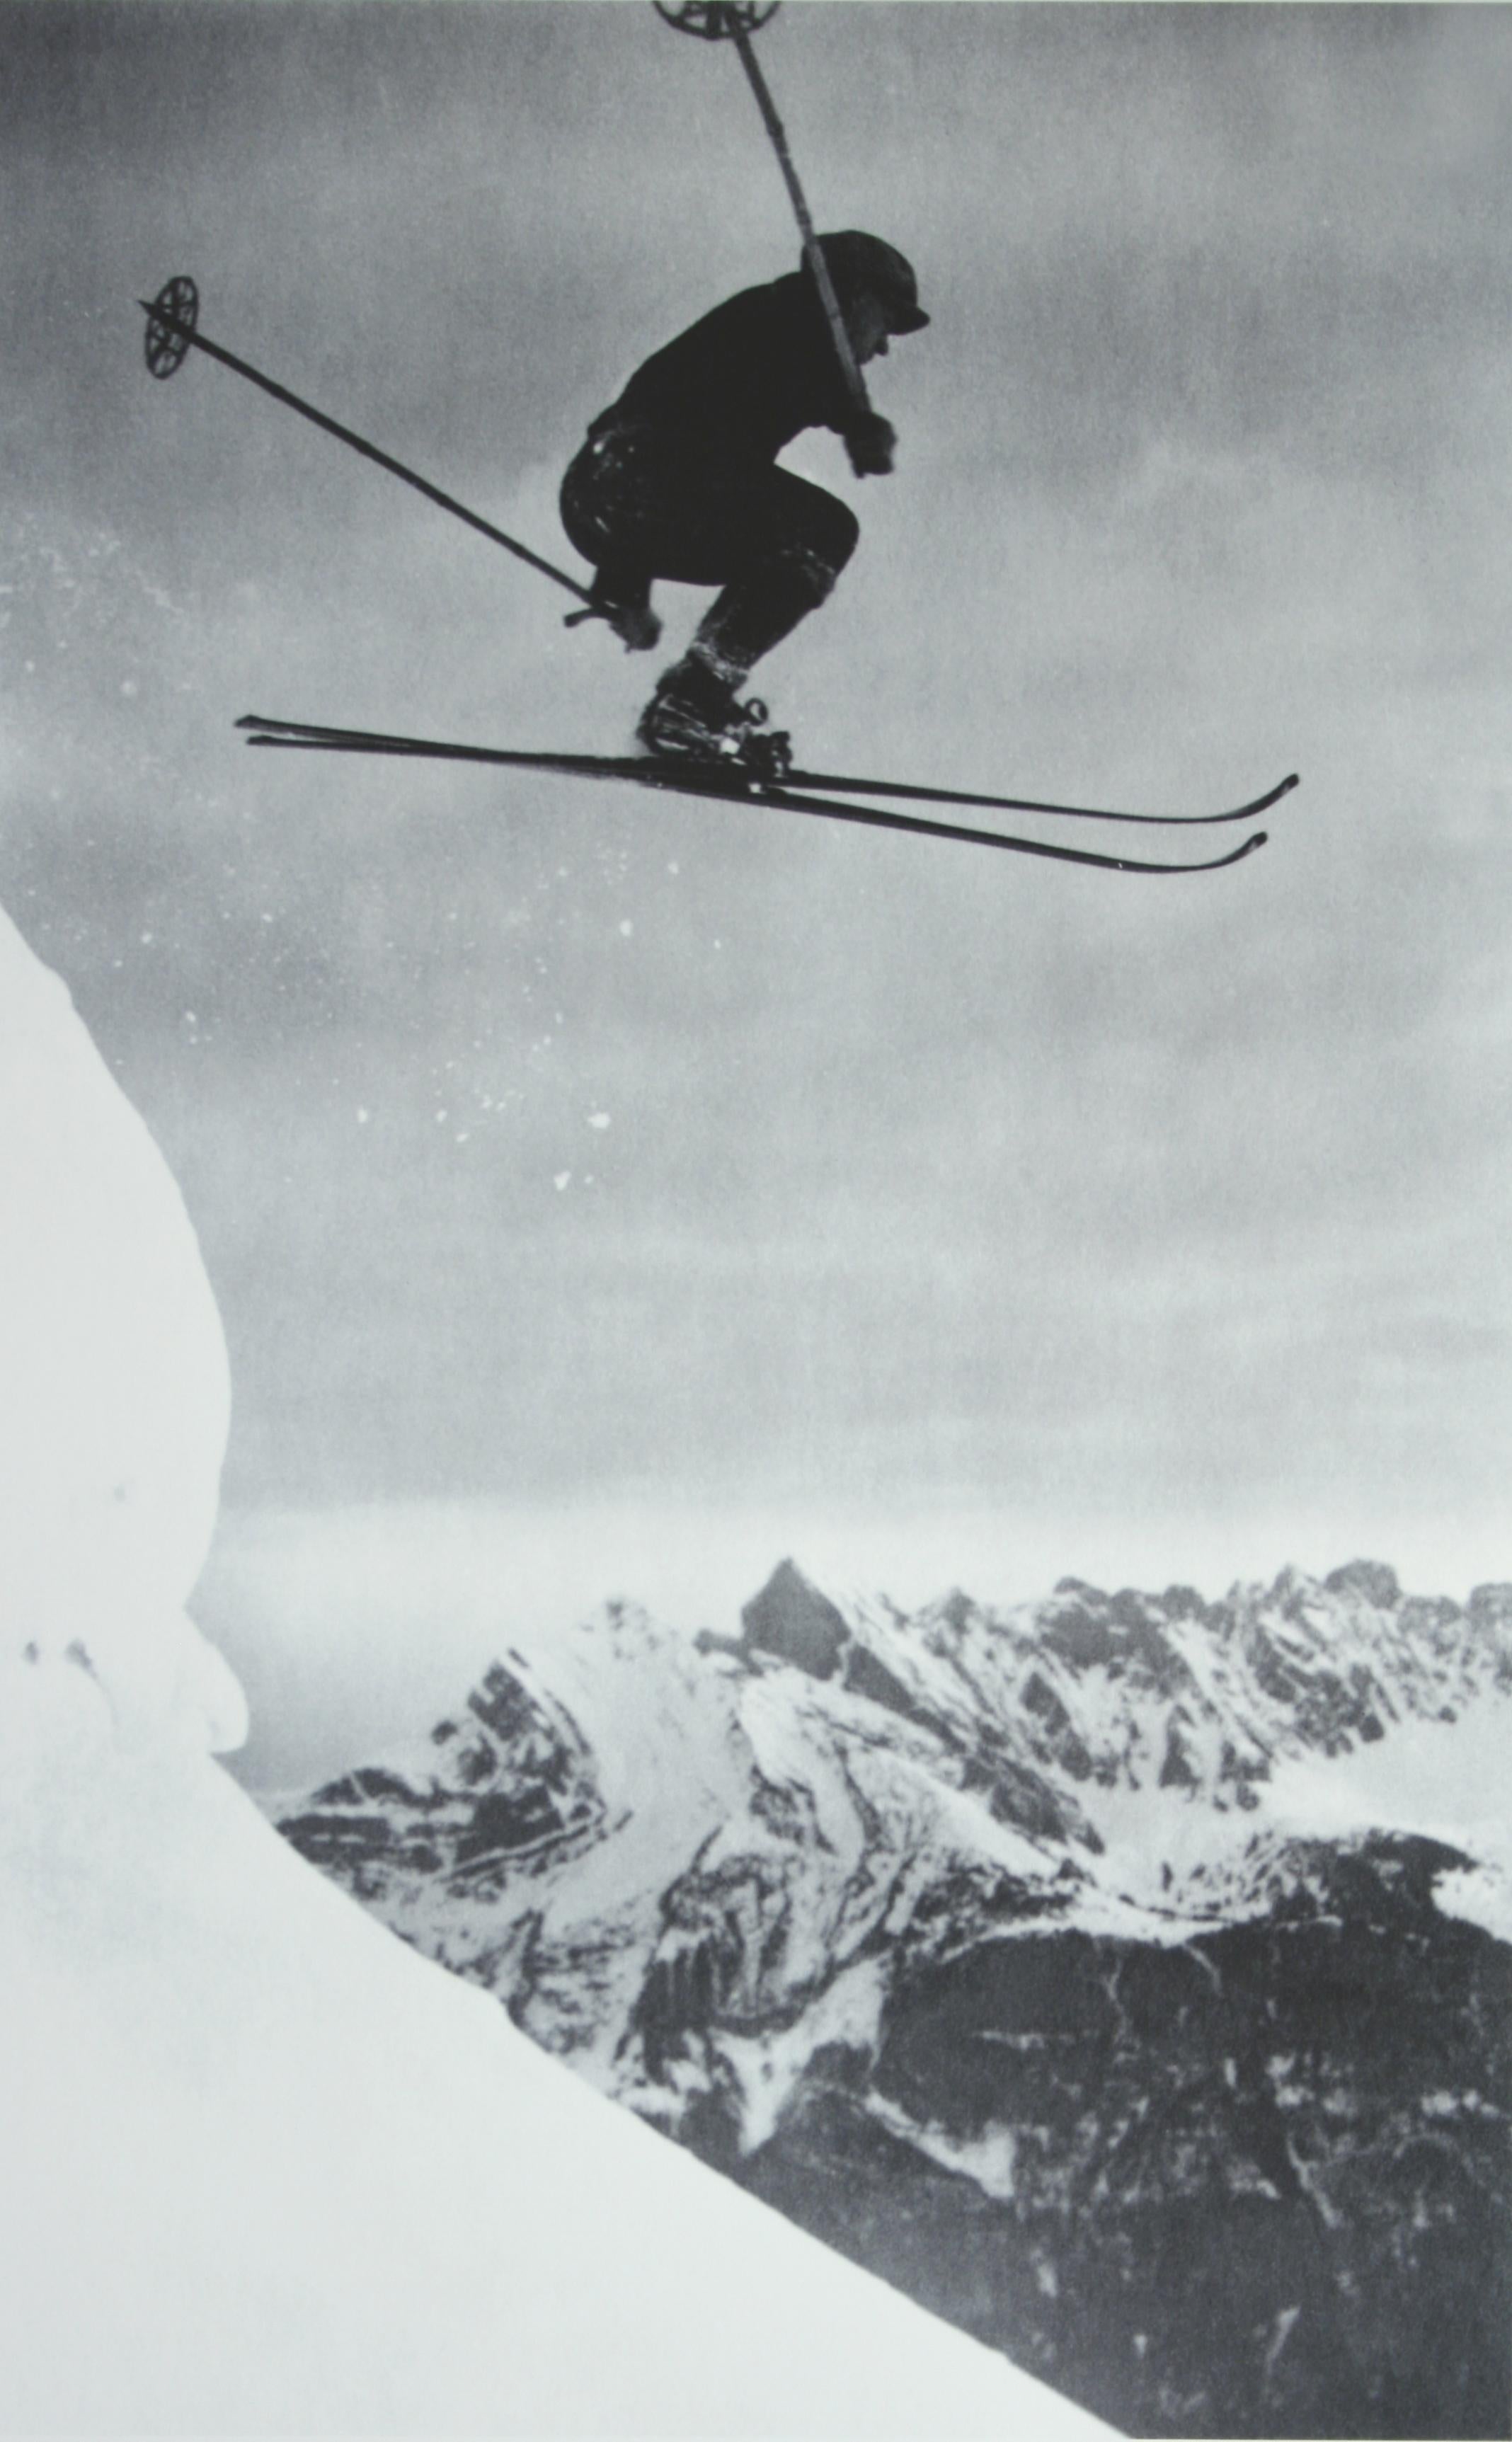 Photographie de ski.
der Sprung